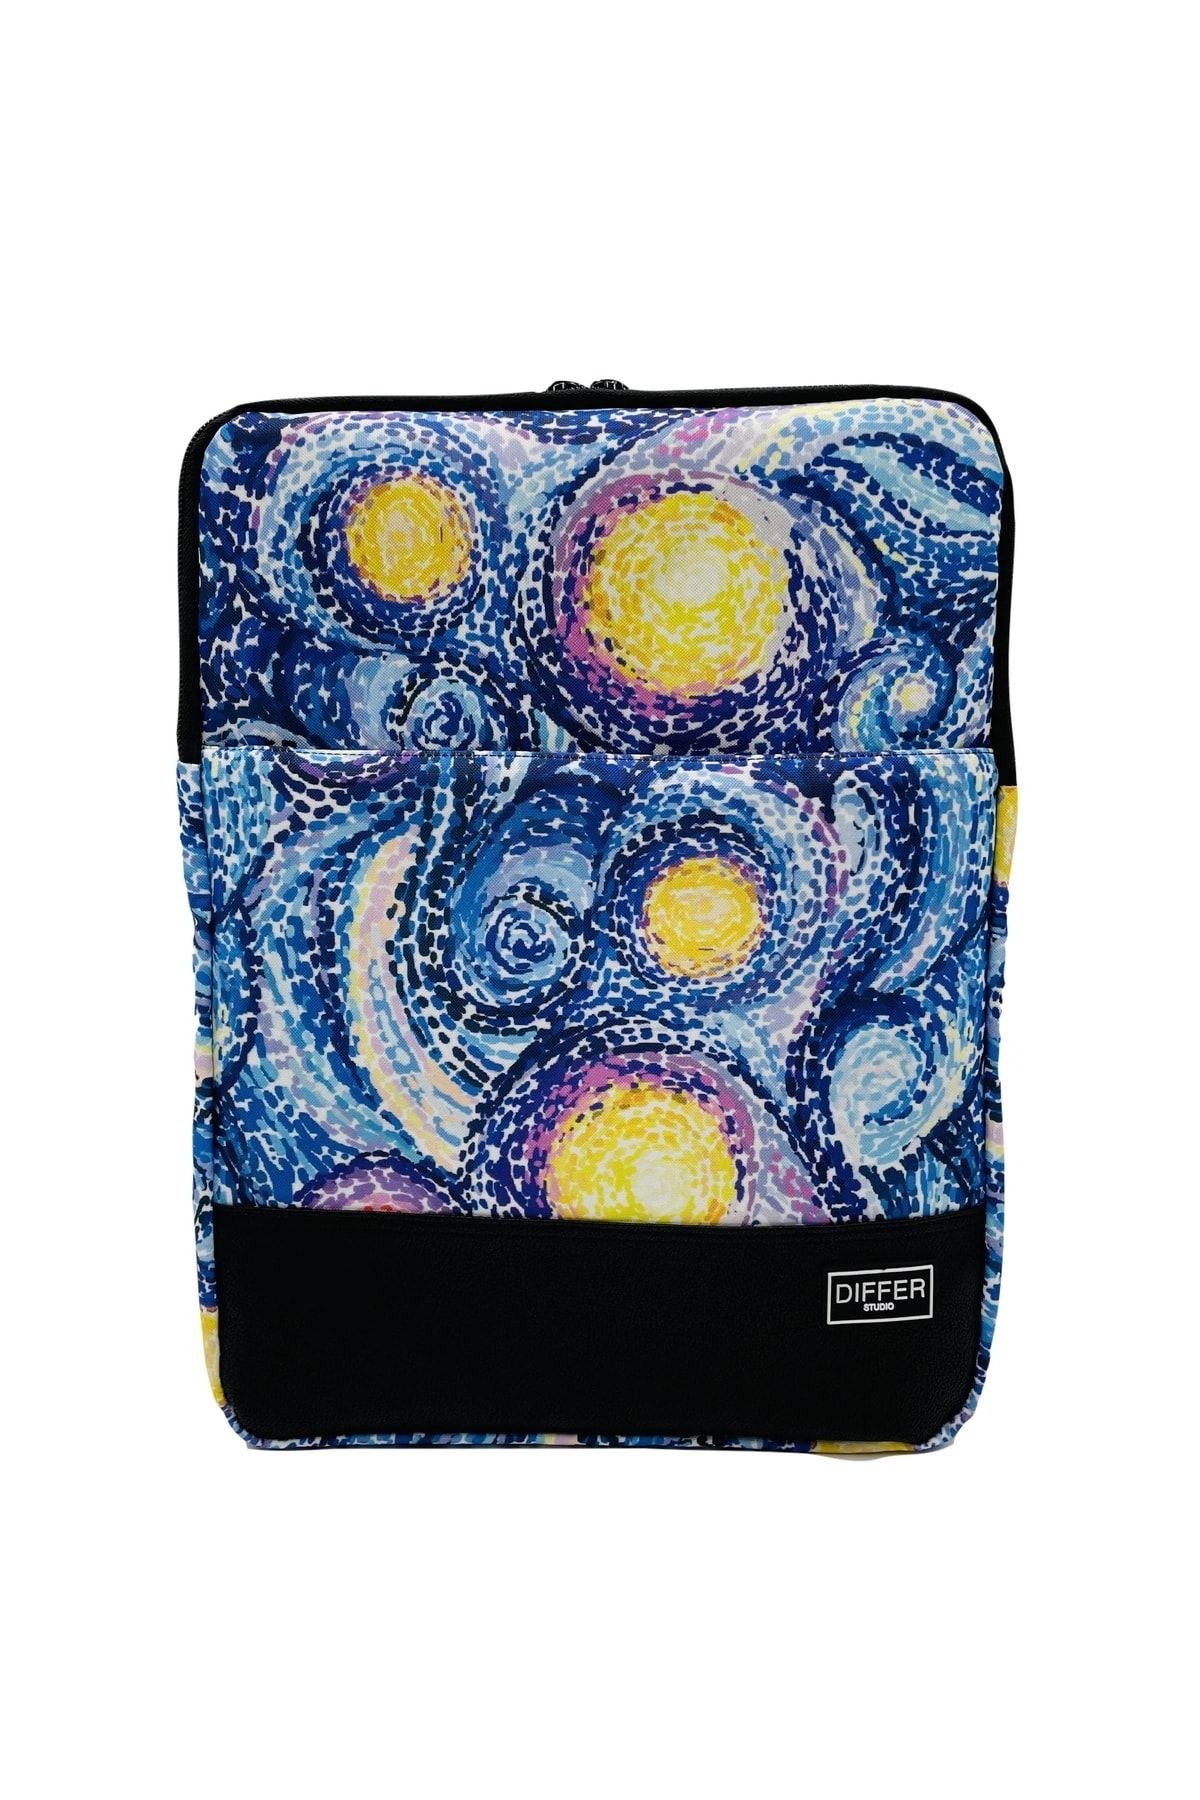 Differ 15-15,6 Inç Van Gogh Desenli Lacivert Unisex Macbook/Laptop/Notebook/Evrak Kılıfı